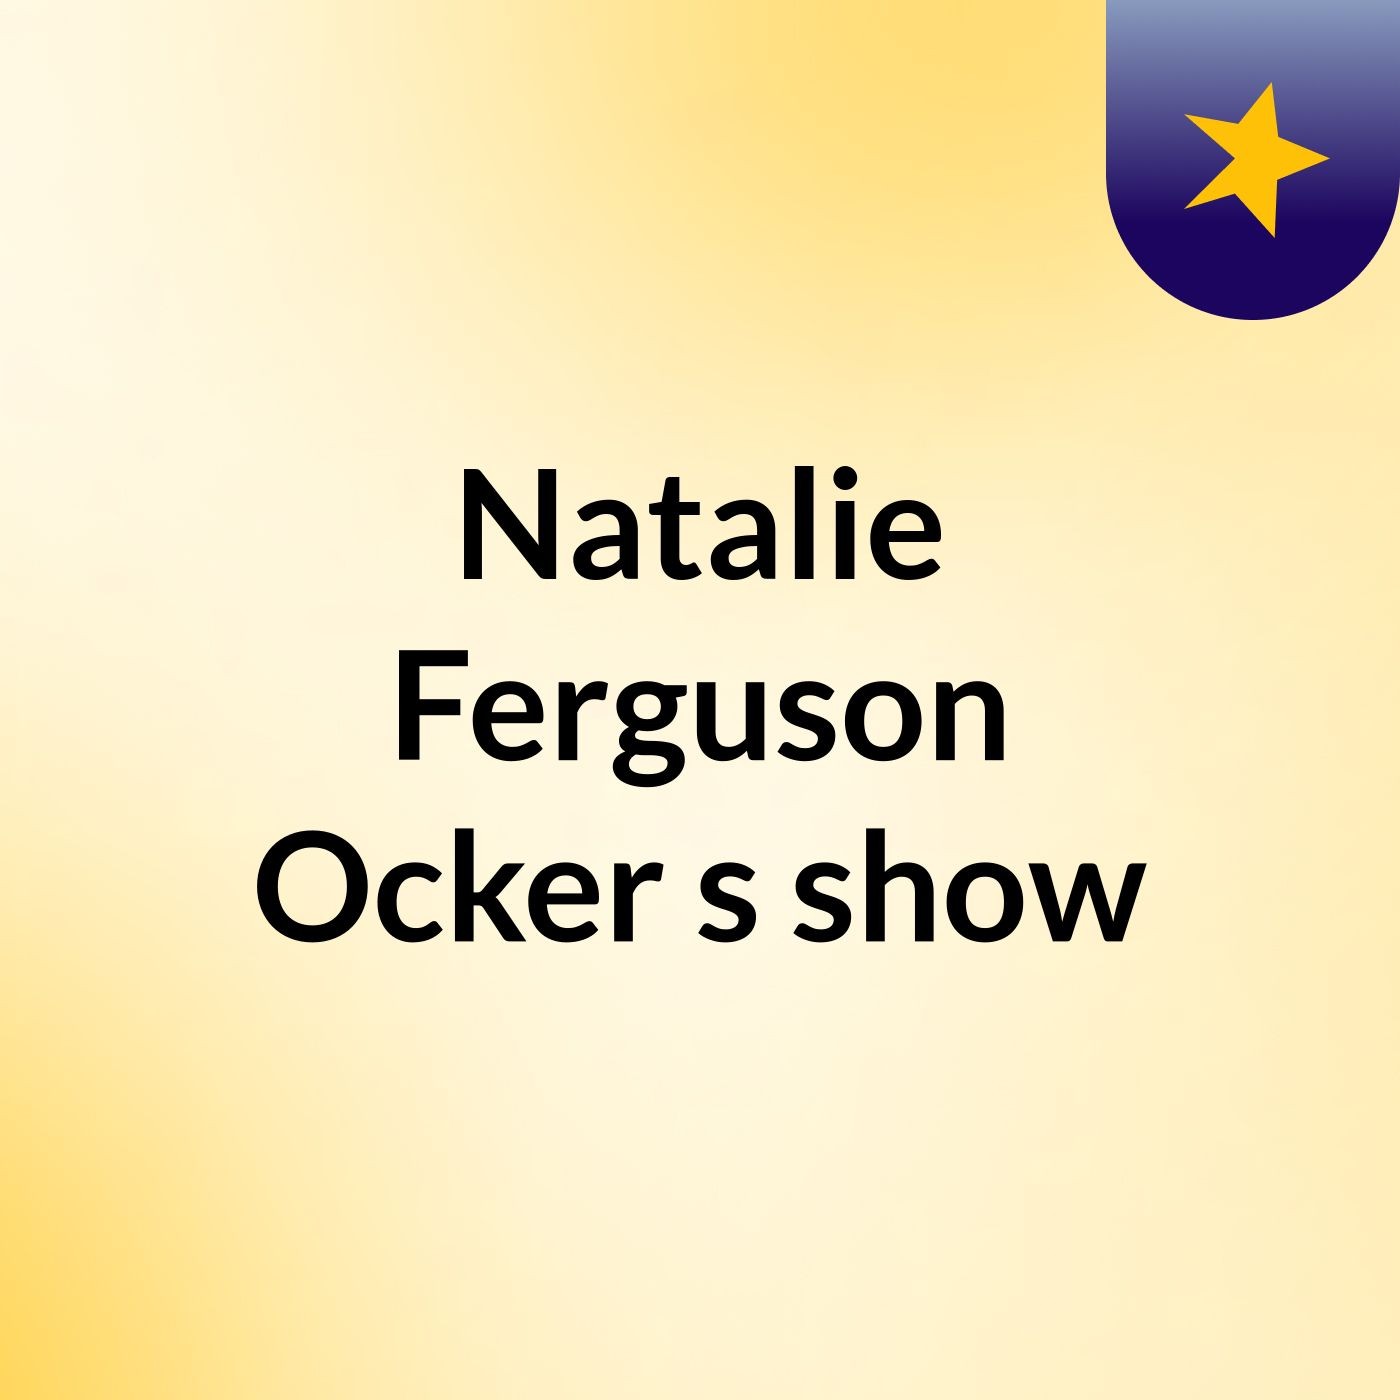 Natalie Ferguson Ocker's show